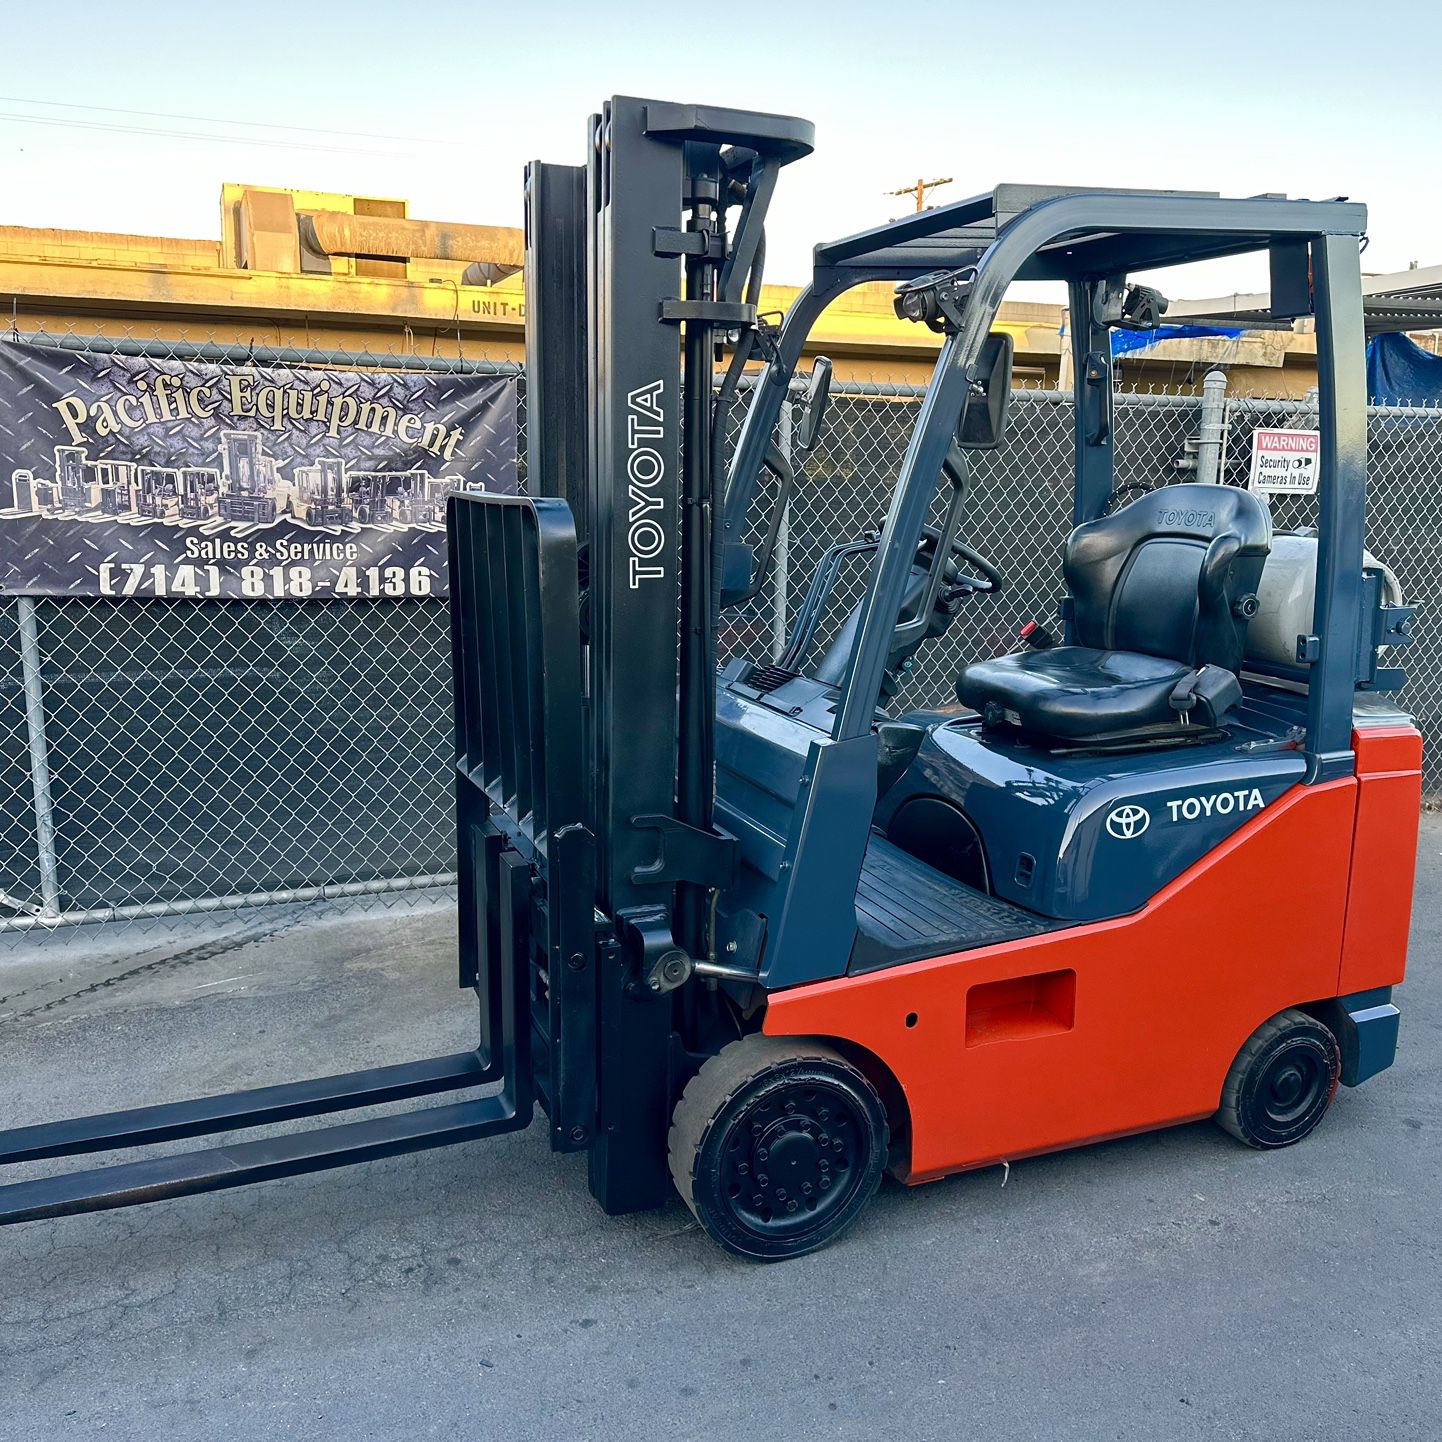 2019 Toyota Forklift 3000 Pound Capacity